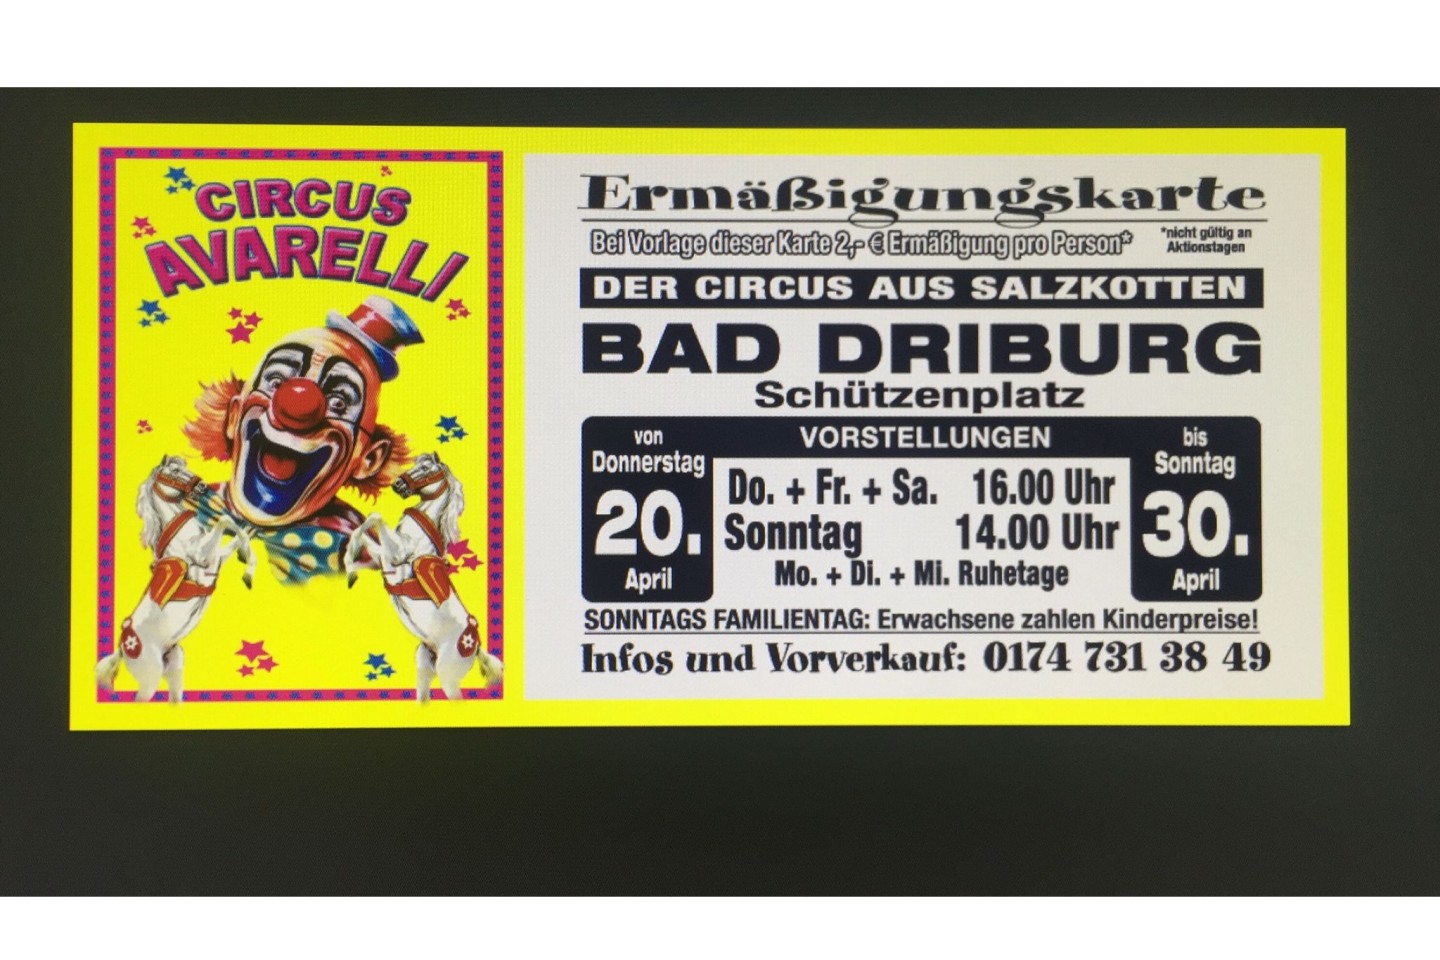 Ganz neu in Bad Driburg - Der Circus Avarelly - donnerstags bis sonntags